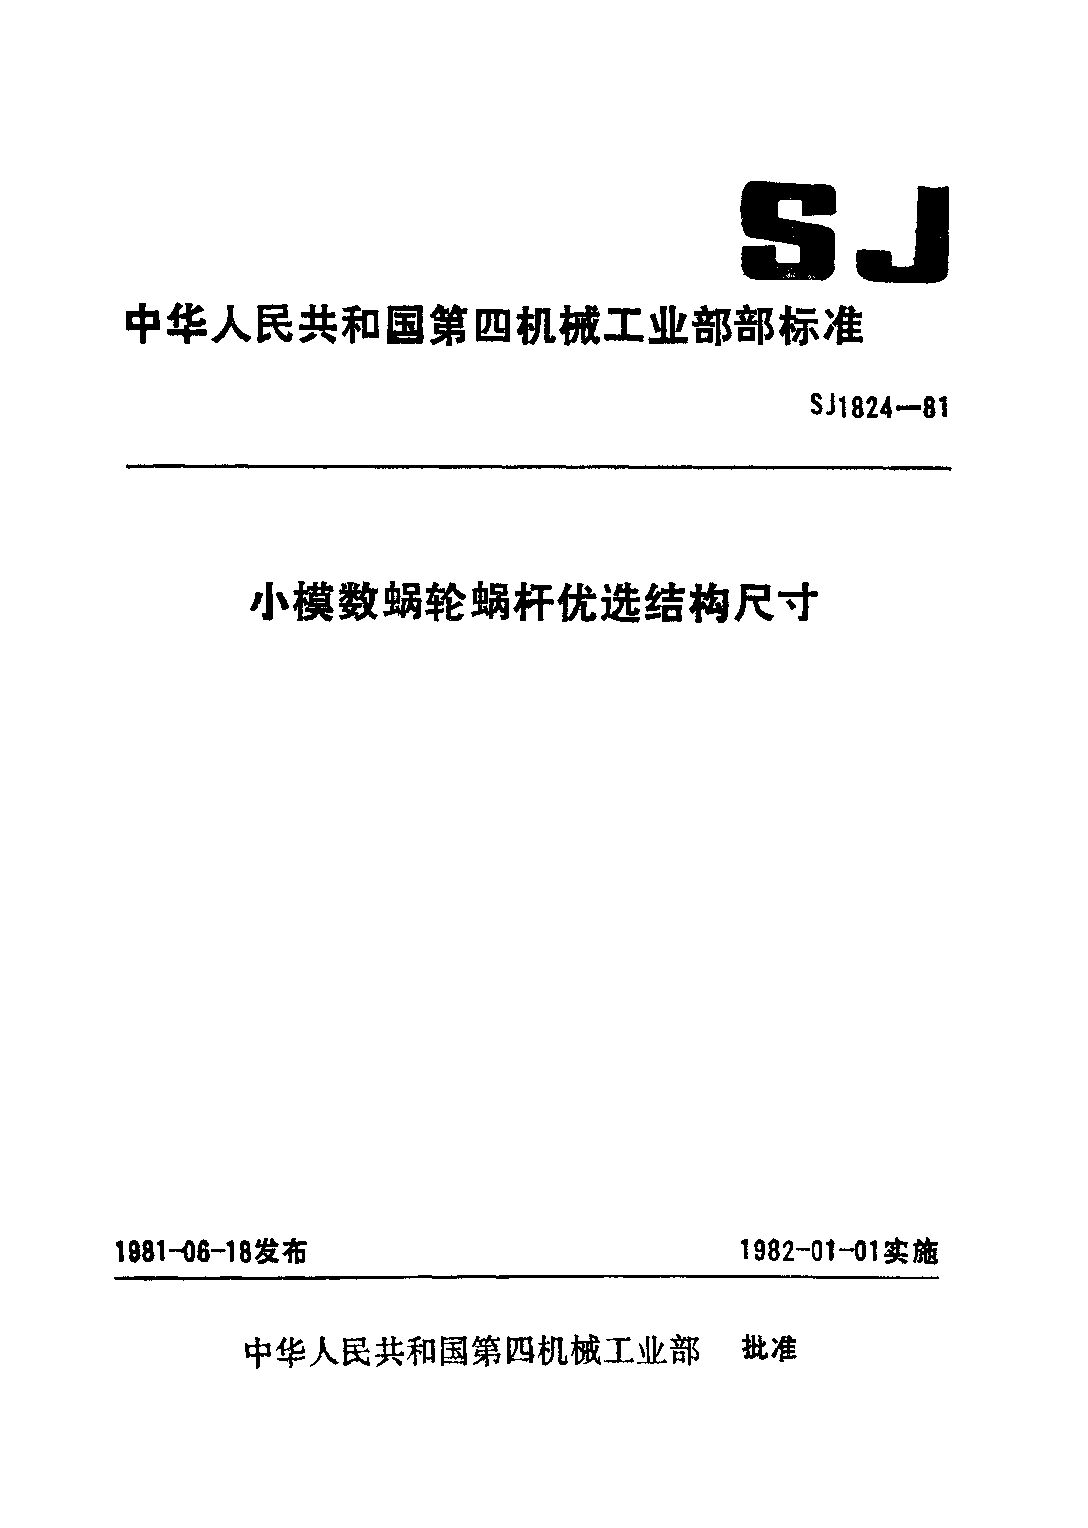 SJ 1824-1981封面图